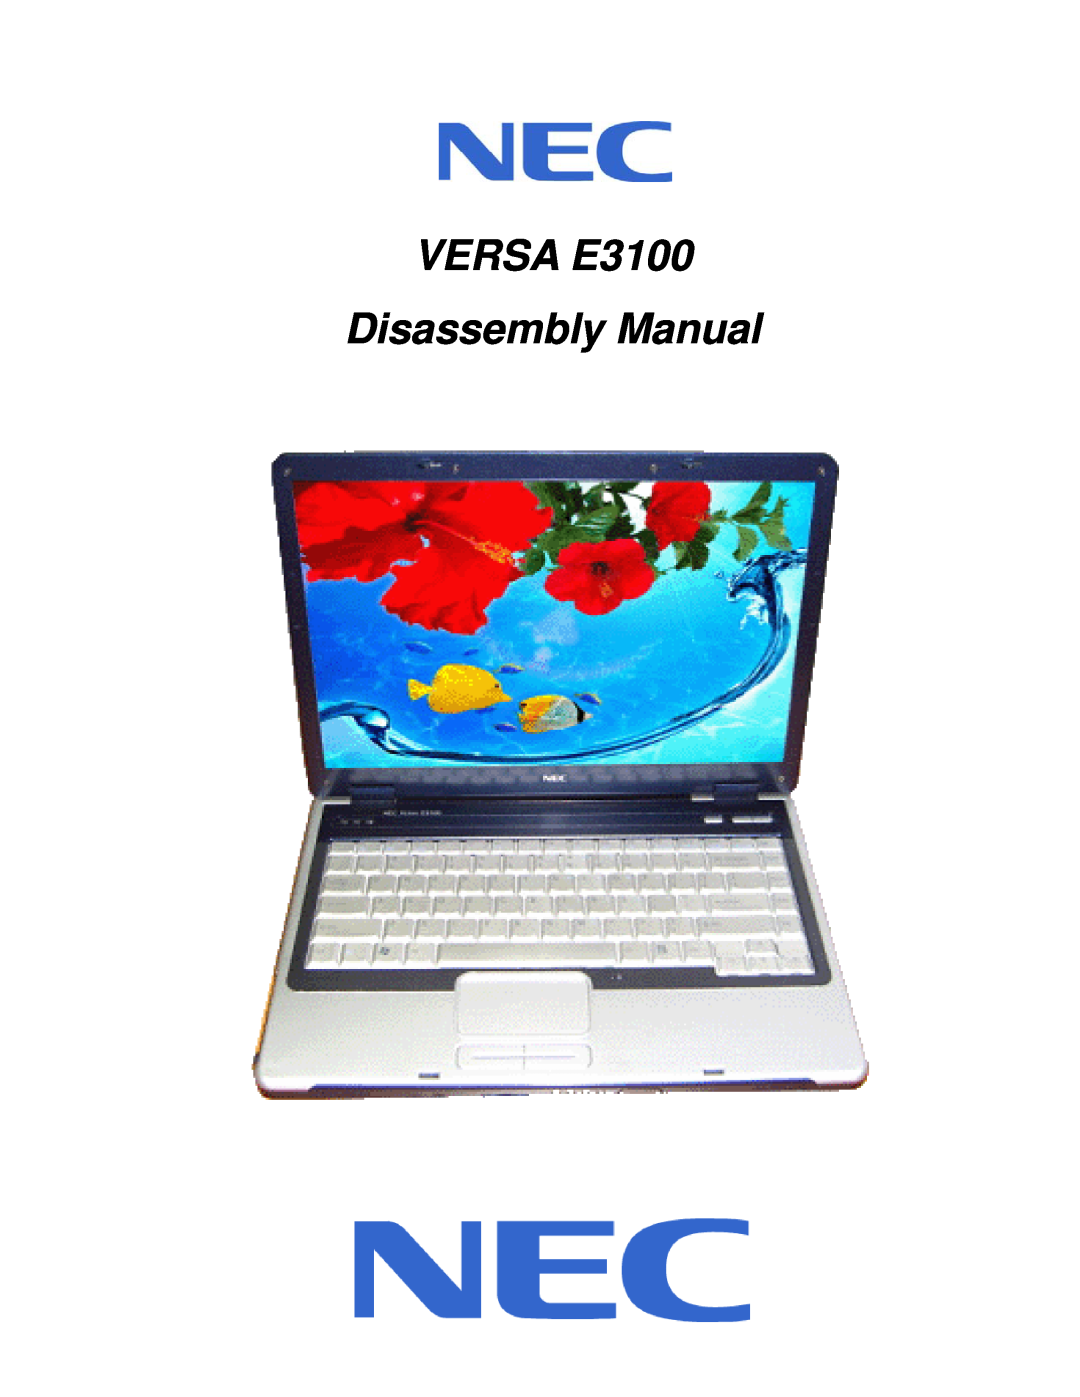 NEC manual VERSA E3100 Disassembly Manual 